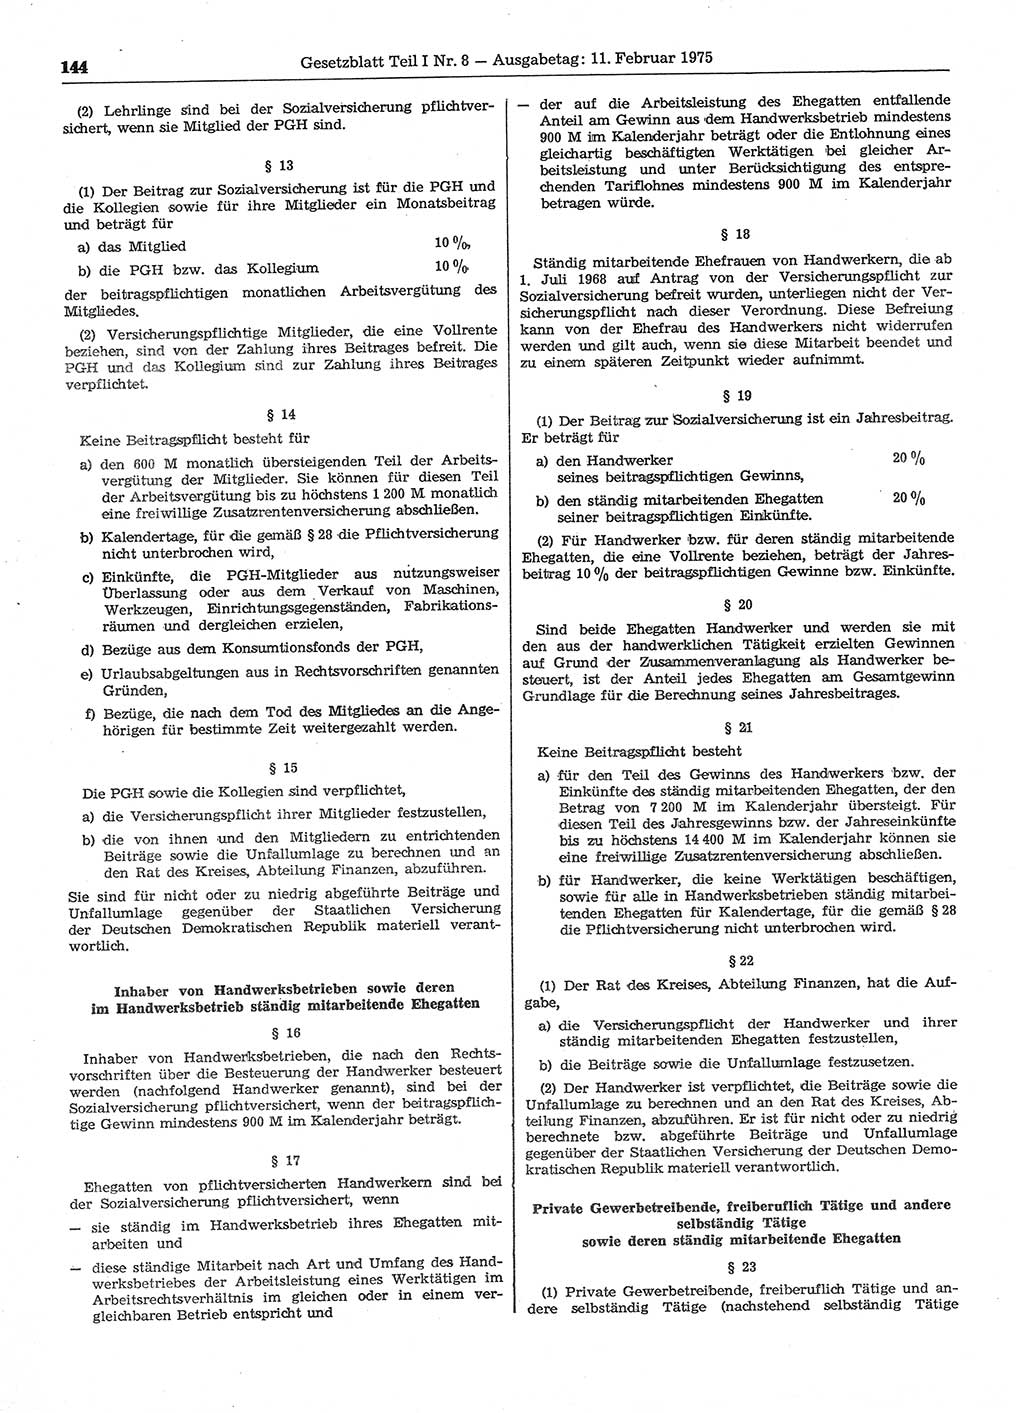 Gesetzblatt (GBl.) der Deutschen Demokratischen Republik (DDR) Teil Ⅰ 1975, Seite 144 (GBl. DDR Ⅰ 1975, S. 144)